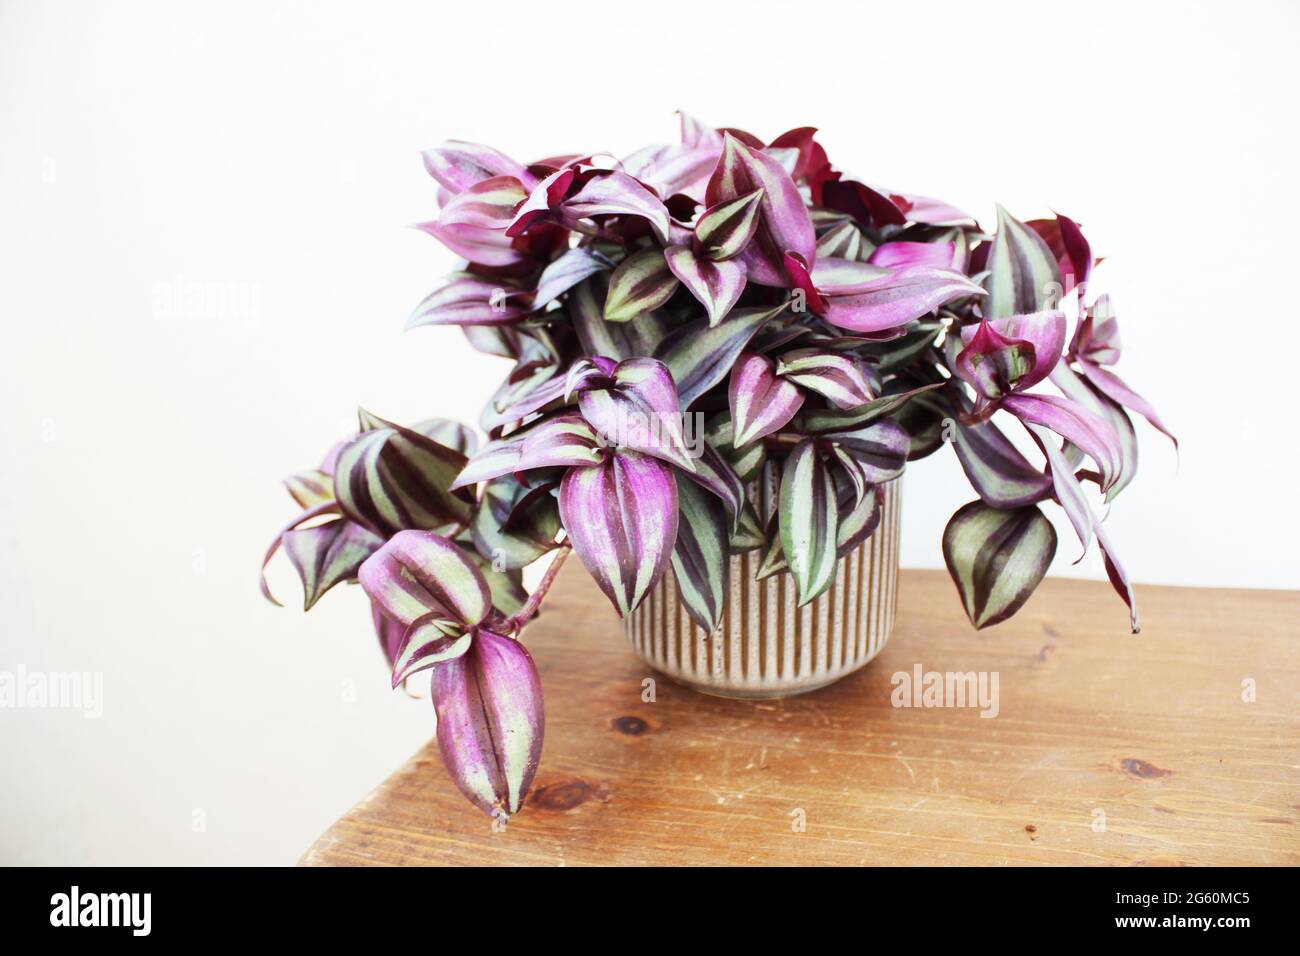 Tradescantia zebrina, conosciuta anche come pianta di pollice o giudeo vagabondante. Foto Stock